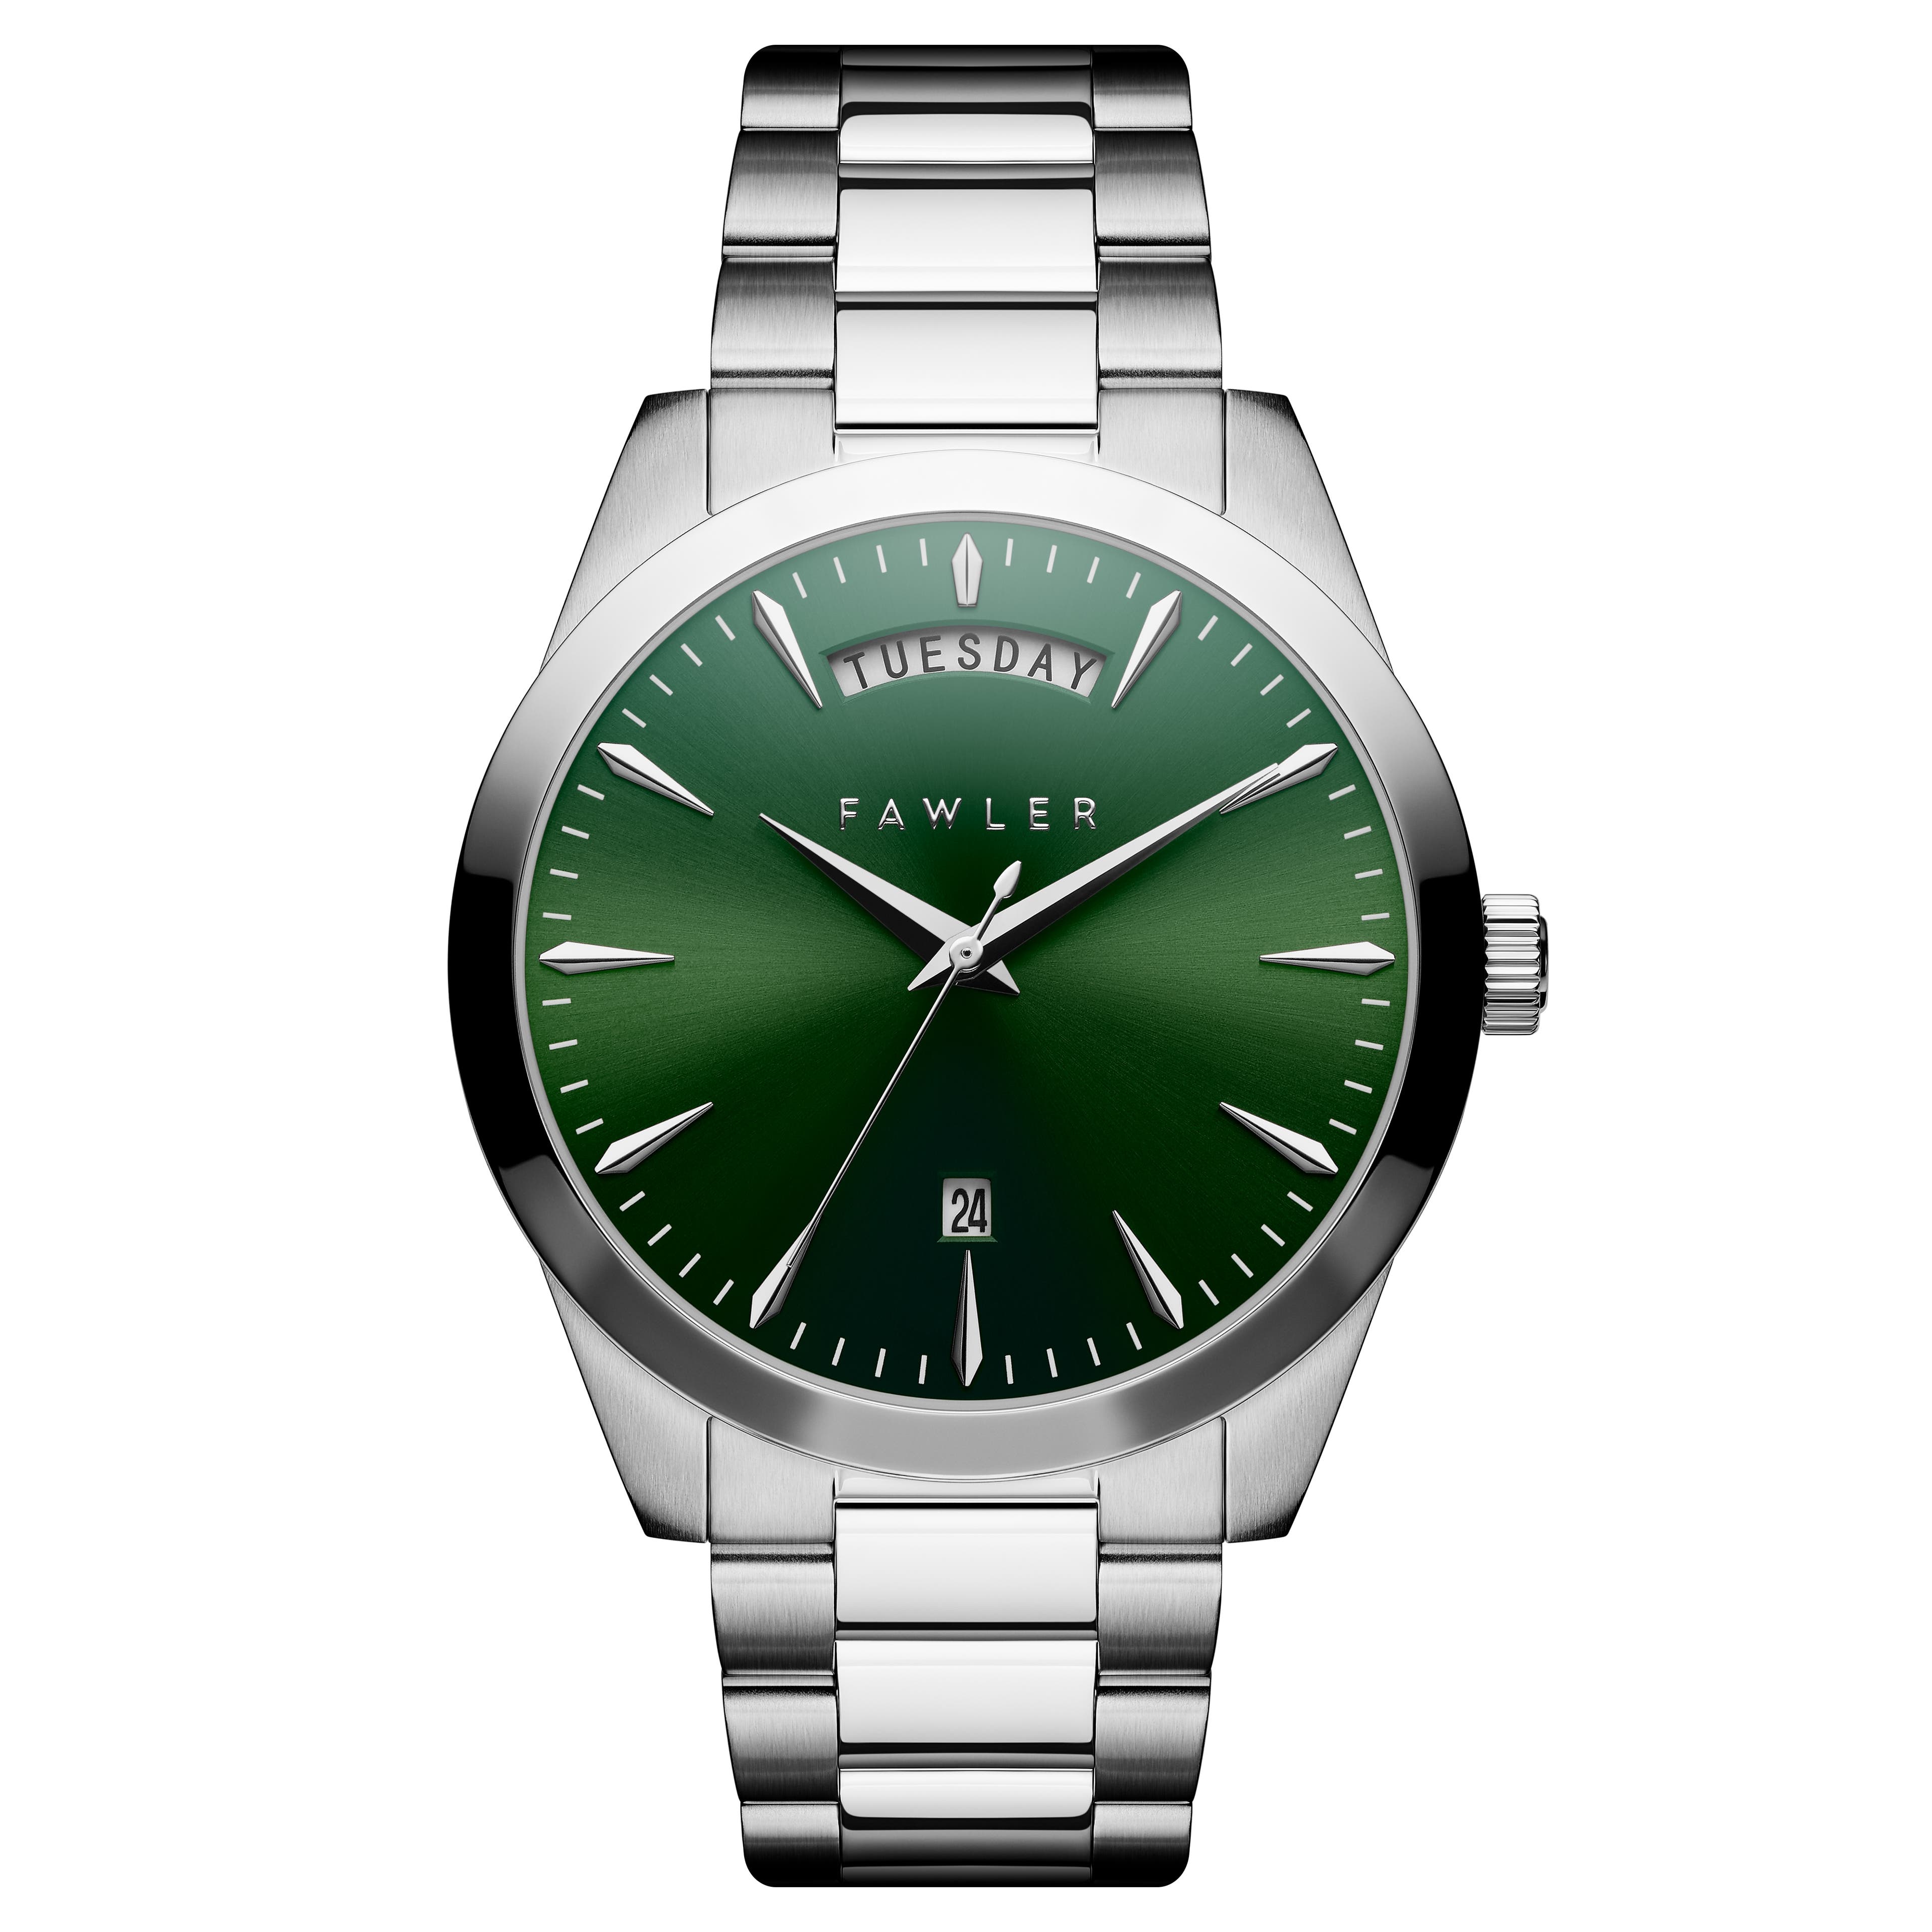 Eric | Srebrzysty zegarek ze stali nierdzewnej z zieloną tarczą oraz datownikiem i dniem tygodnia